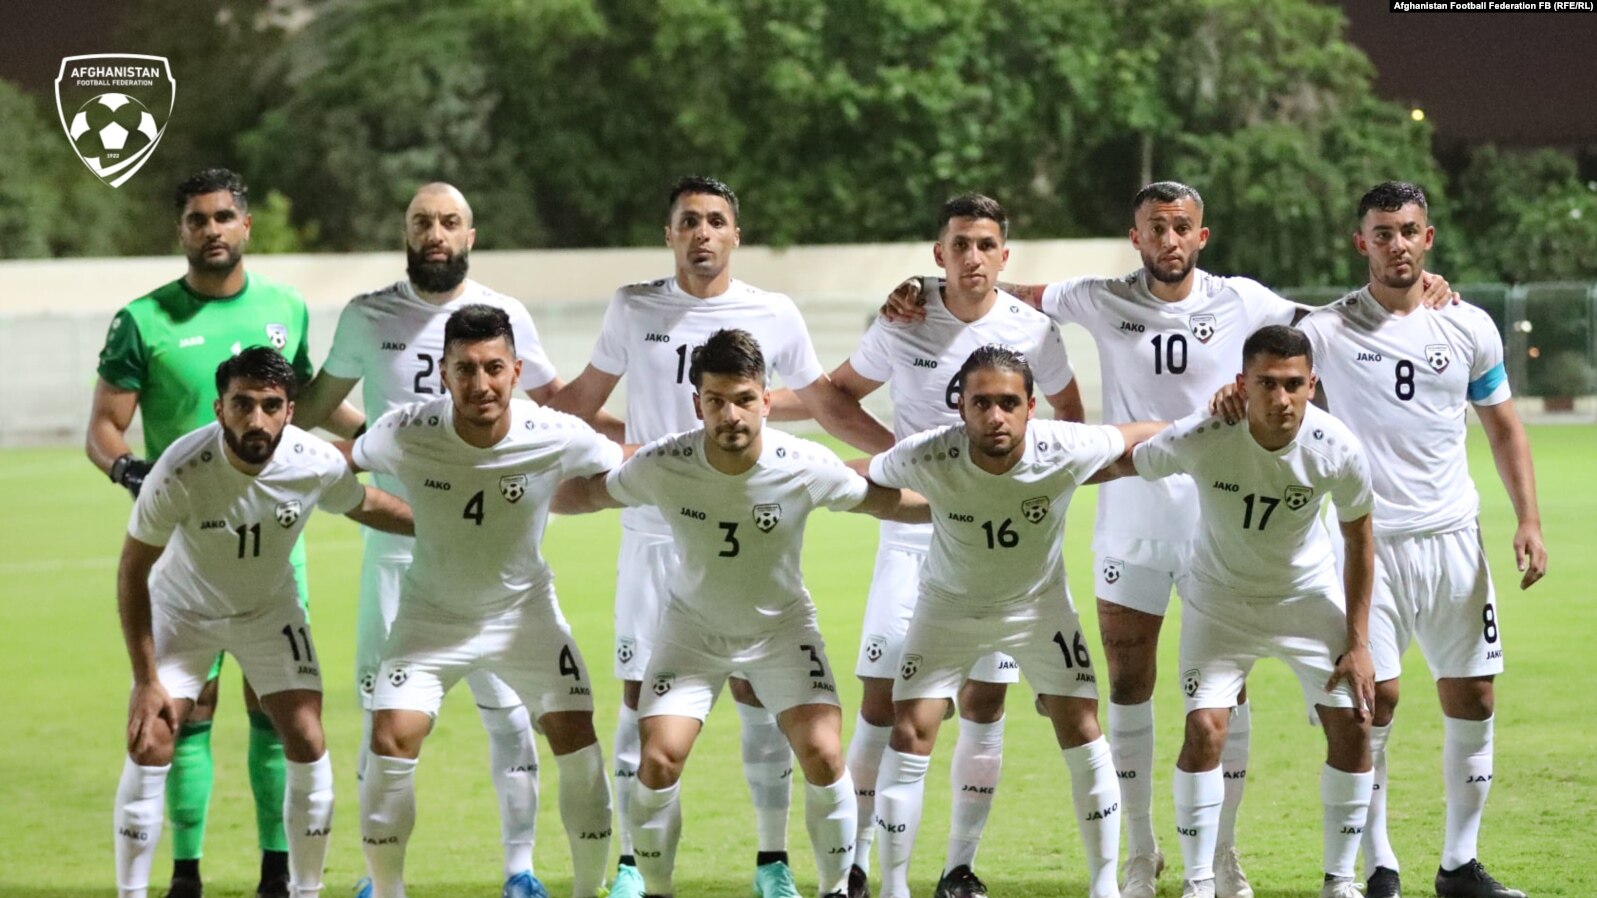  مسابقه فوتبال میان افغانستان و هند با تساوی 1-1 پایان یافت